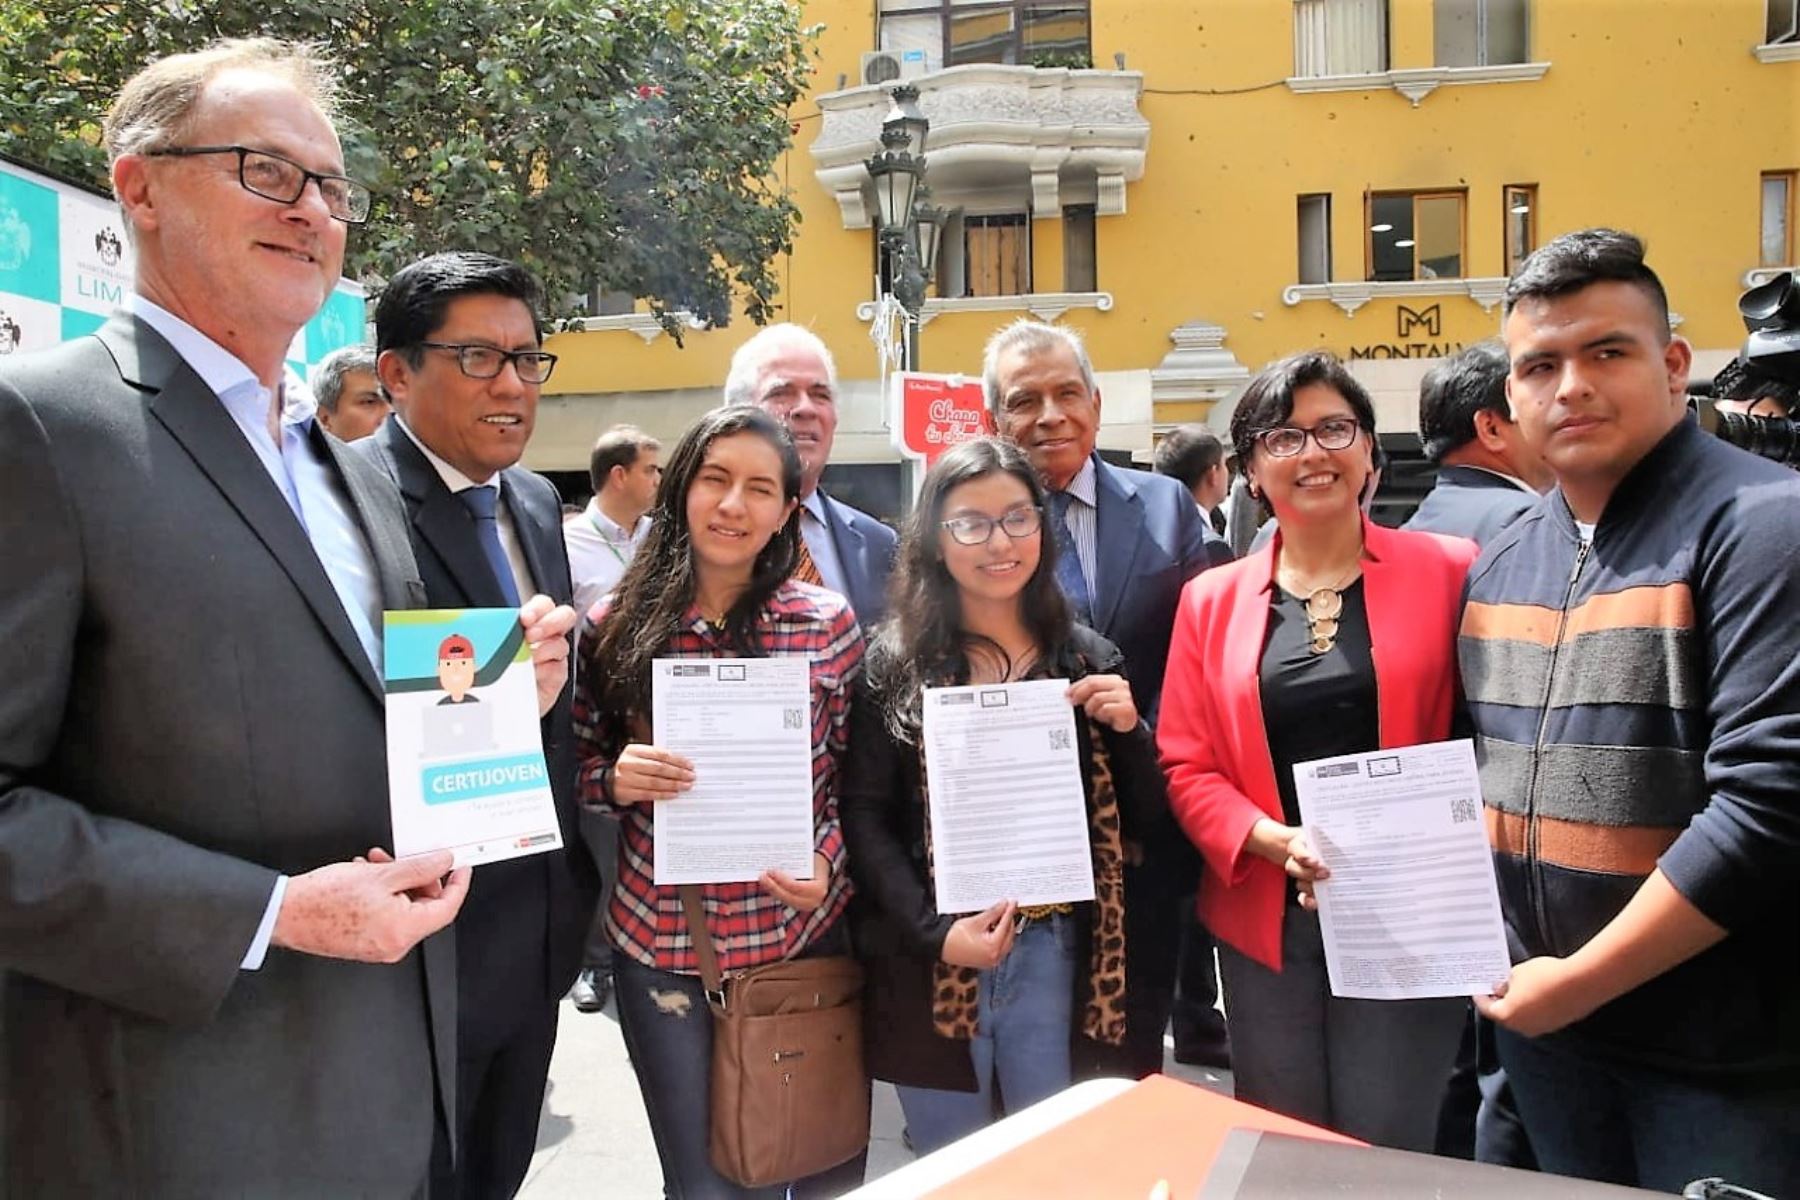 La ministra Sylvia Cáceres presentó la iniciativa "Chapa tu chamba" que beneficiará a los jóvenes de Lima.